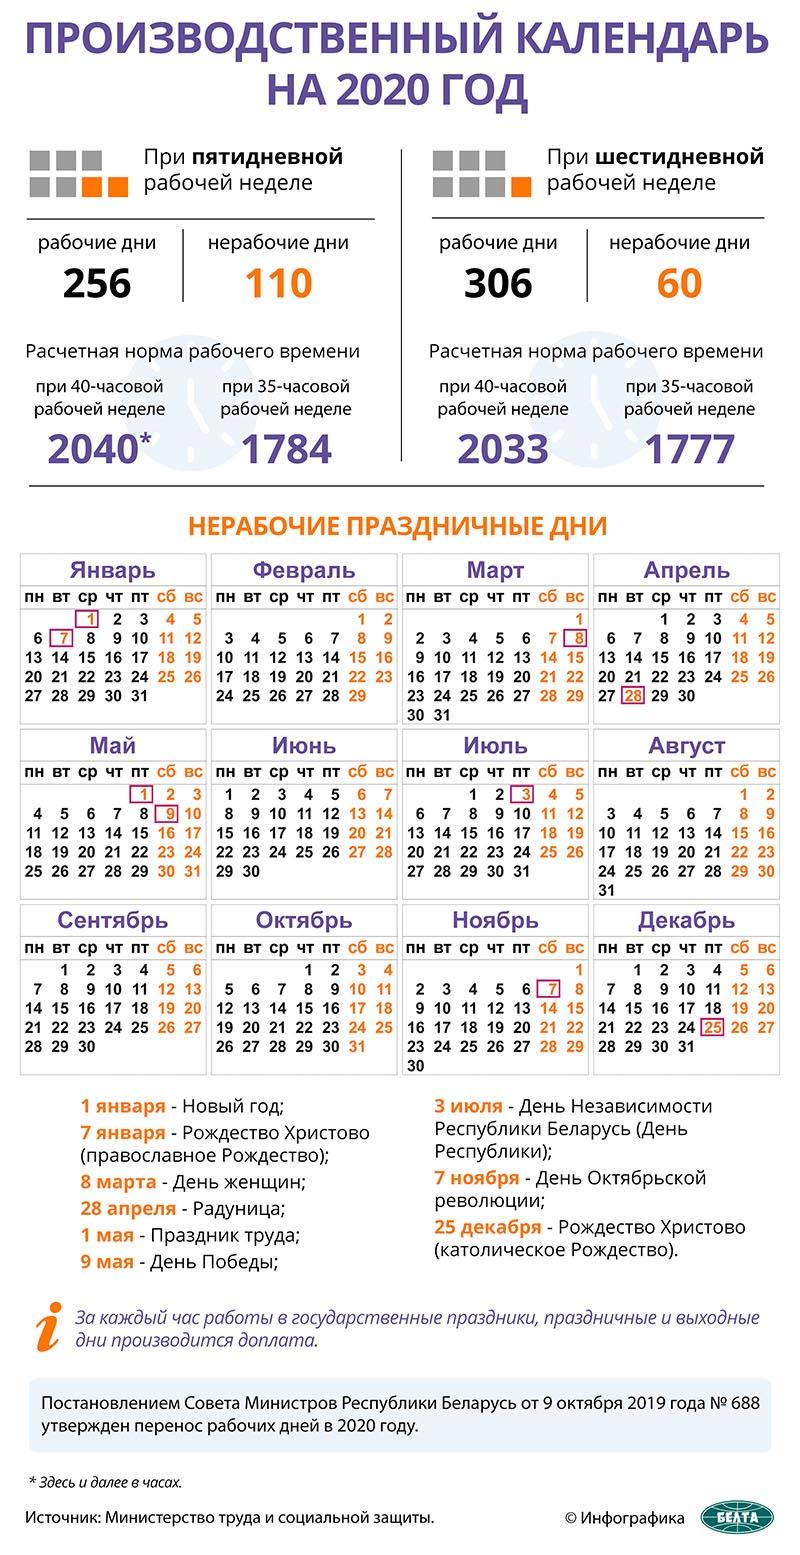 Инфографика. Производственный календарь на 2020 год